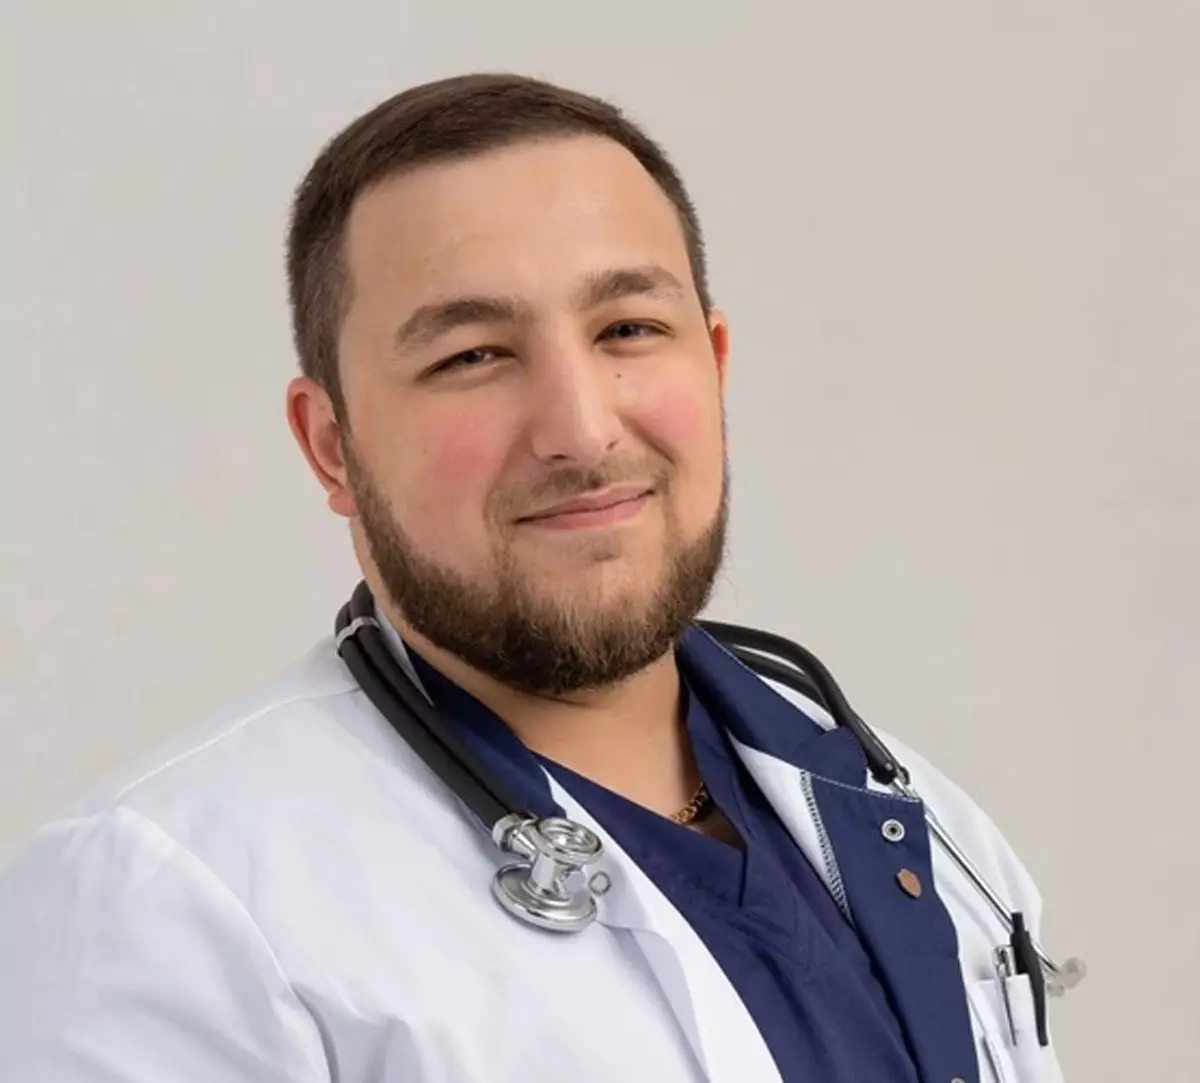 Один из получателей выплаты –;Алексей Шония, клинический ординатор областного онкологического диспансера и терапевт городской поликлиники.